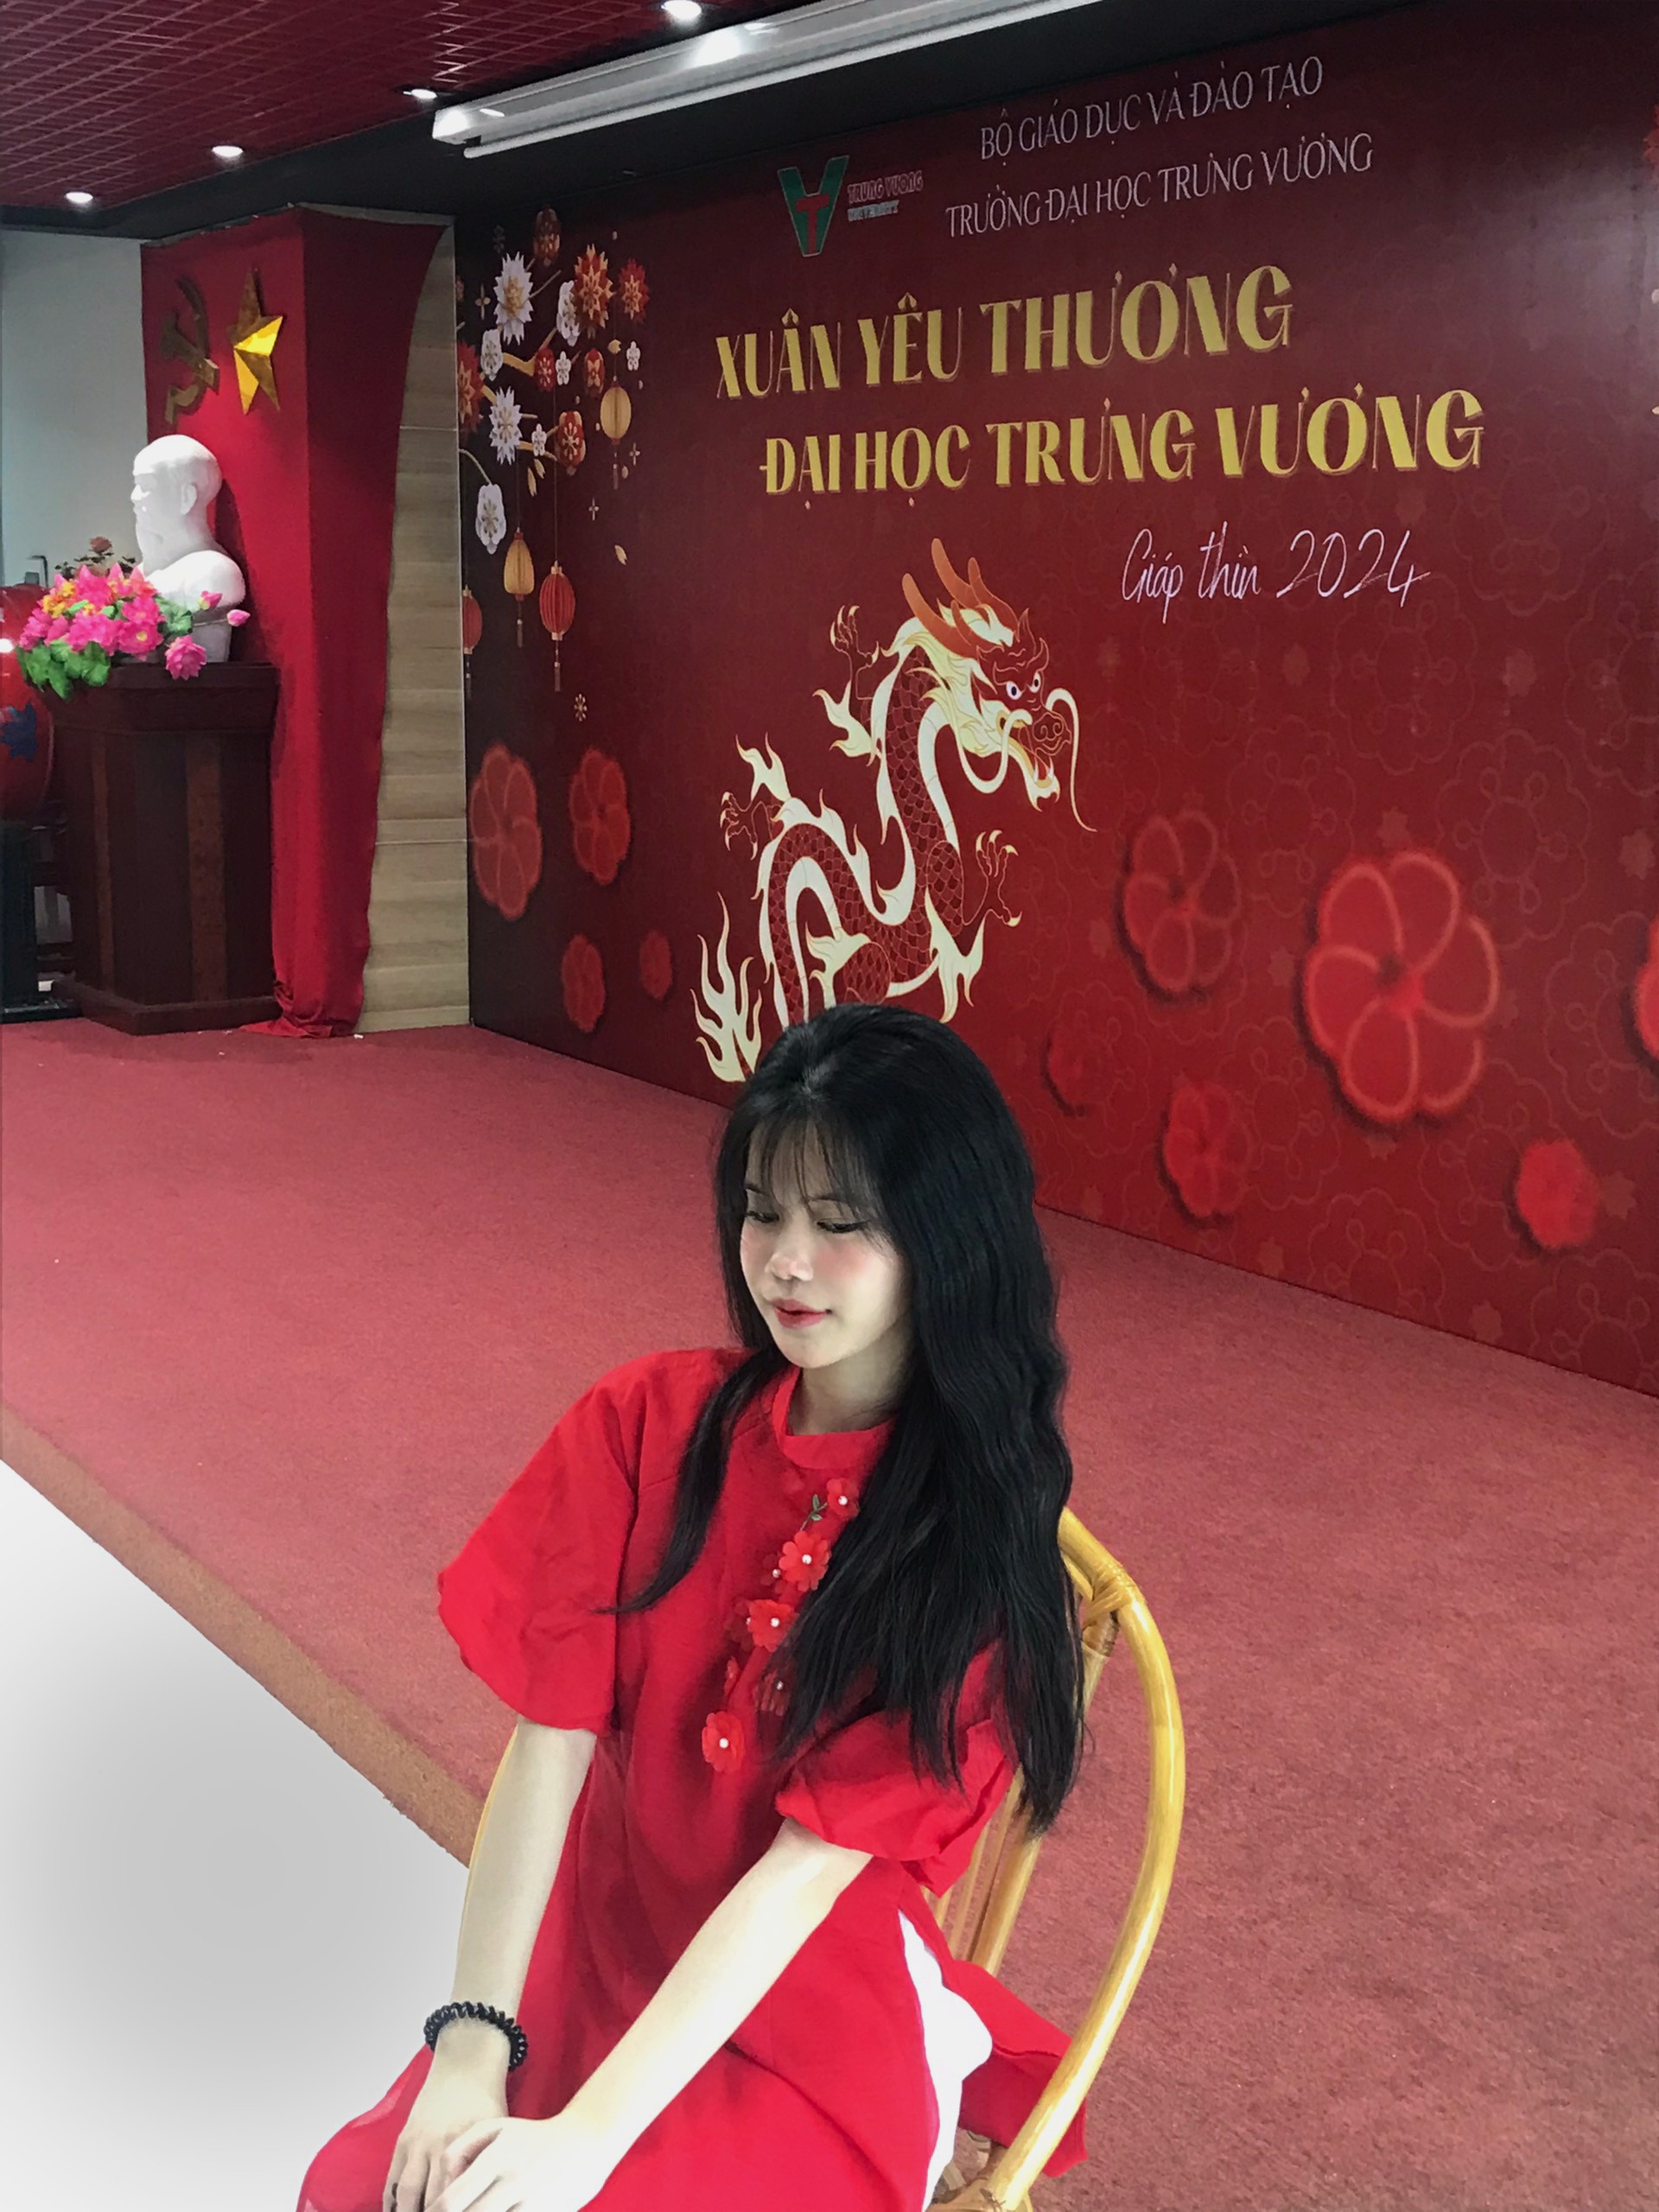 Xuân Yêu Thương -  Cùng sinh viên gìn giữ nét đẹp văn hóa Việt 7